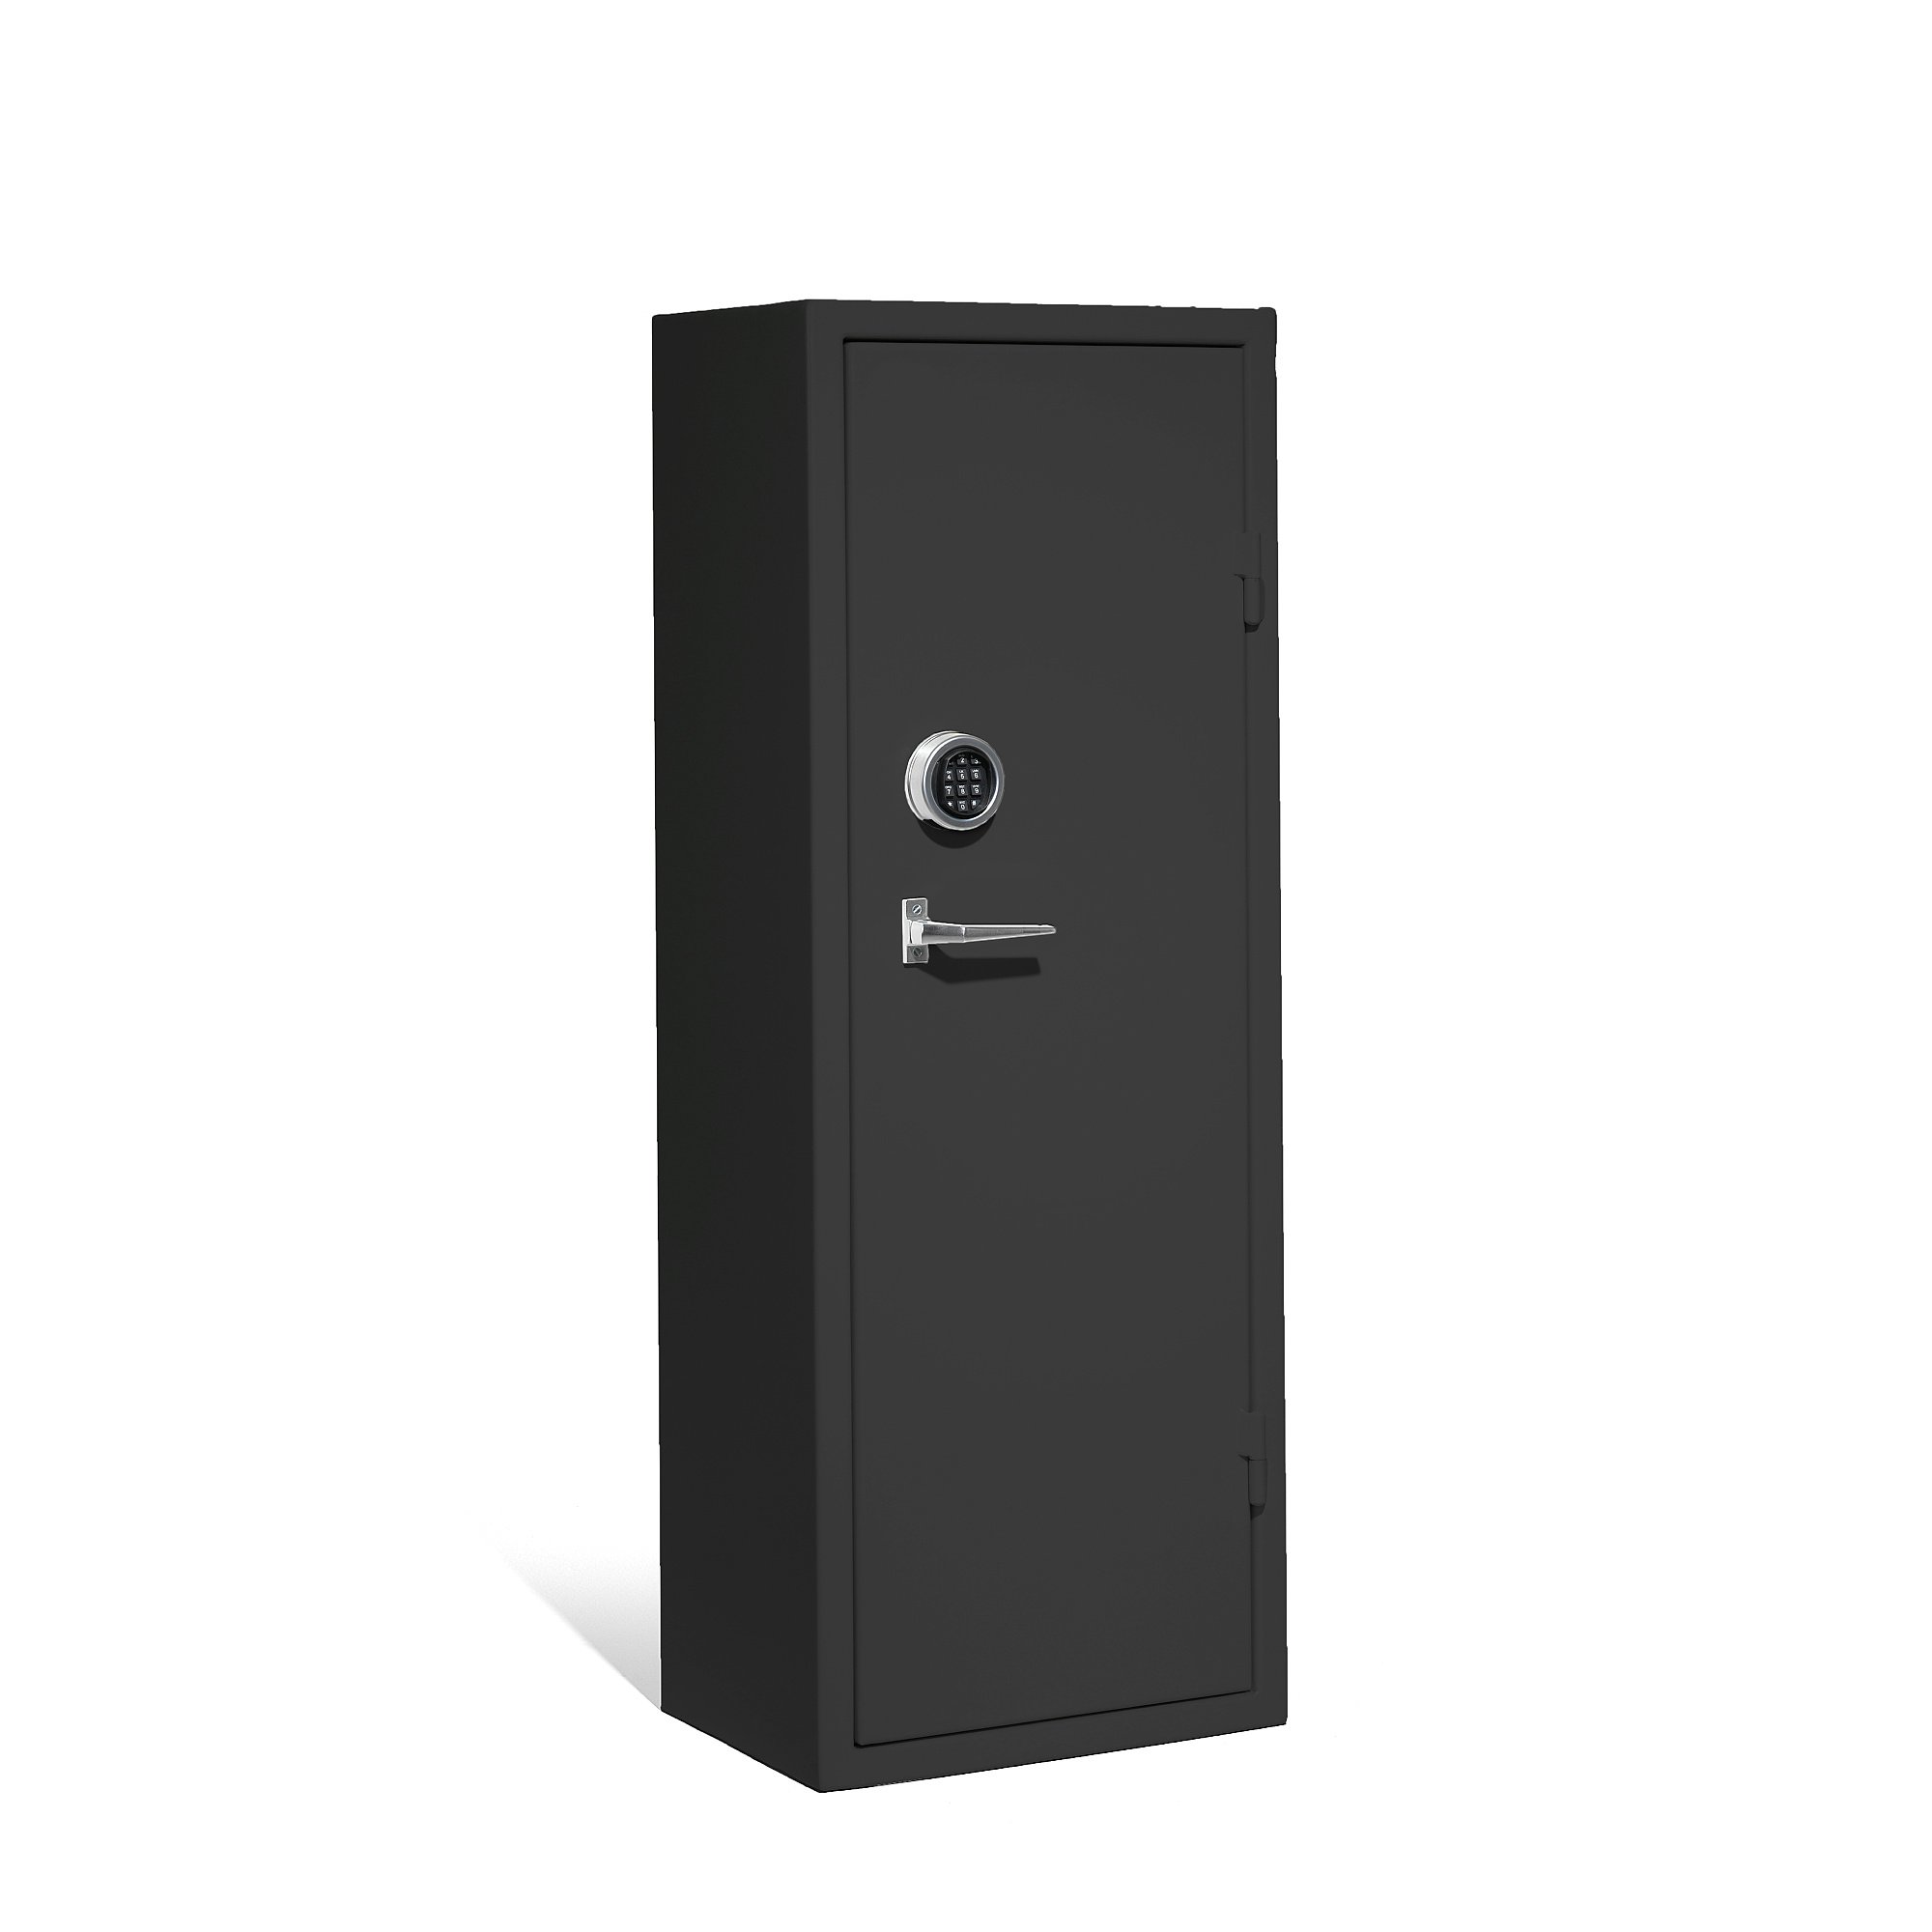 Bezpečnostní skříň CONTAIN, elektronický kódový zámek, 1500x550x400 mm, černá